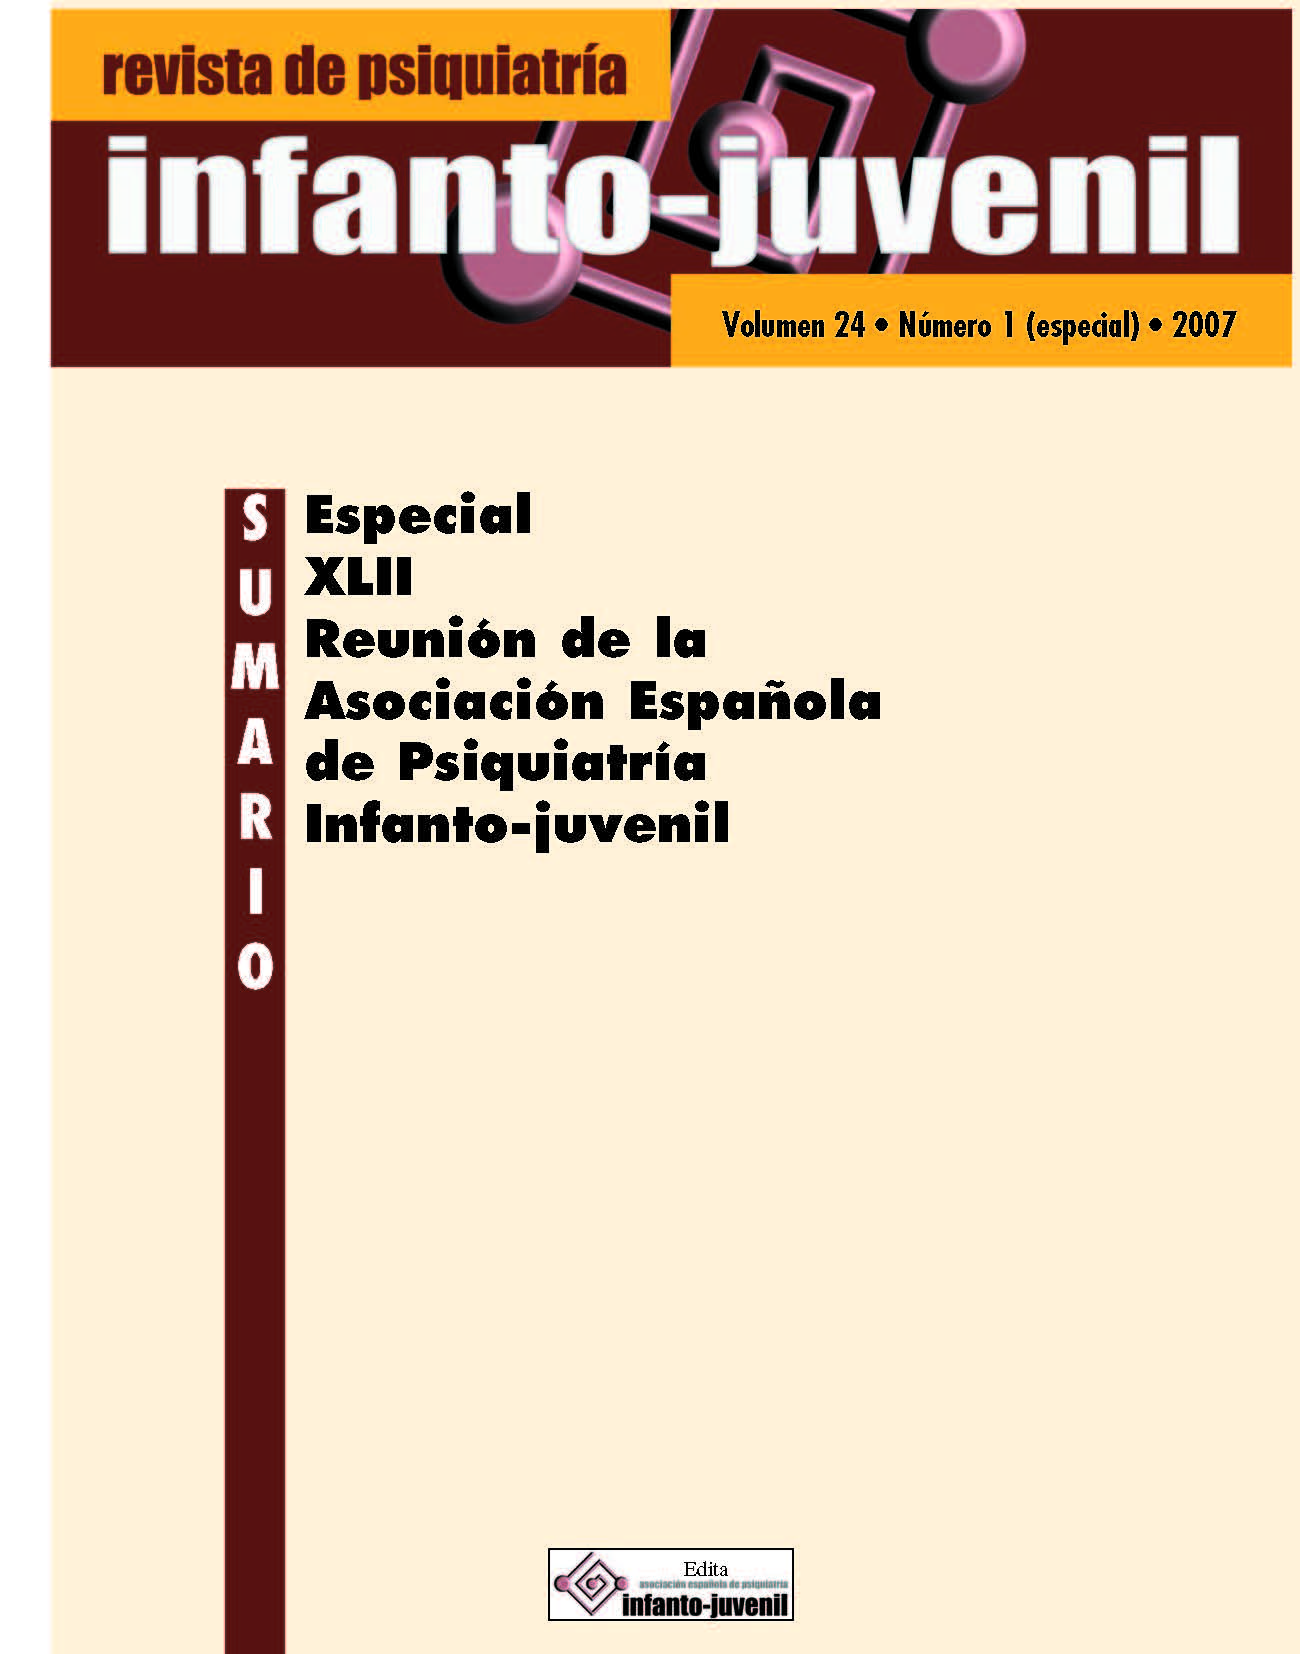 					Ver Vol. 24 Núm. 1 (2007): Especial:  XLII Reunión de la Asociación Española de Psiquiatría Infanto-juvenil
				